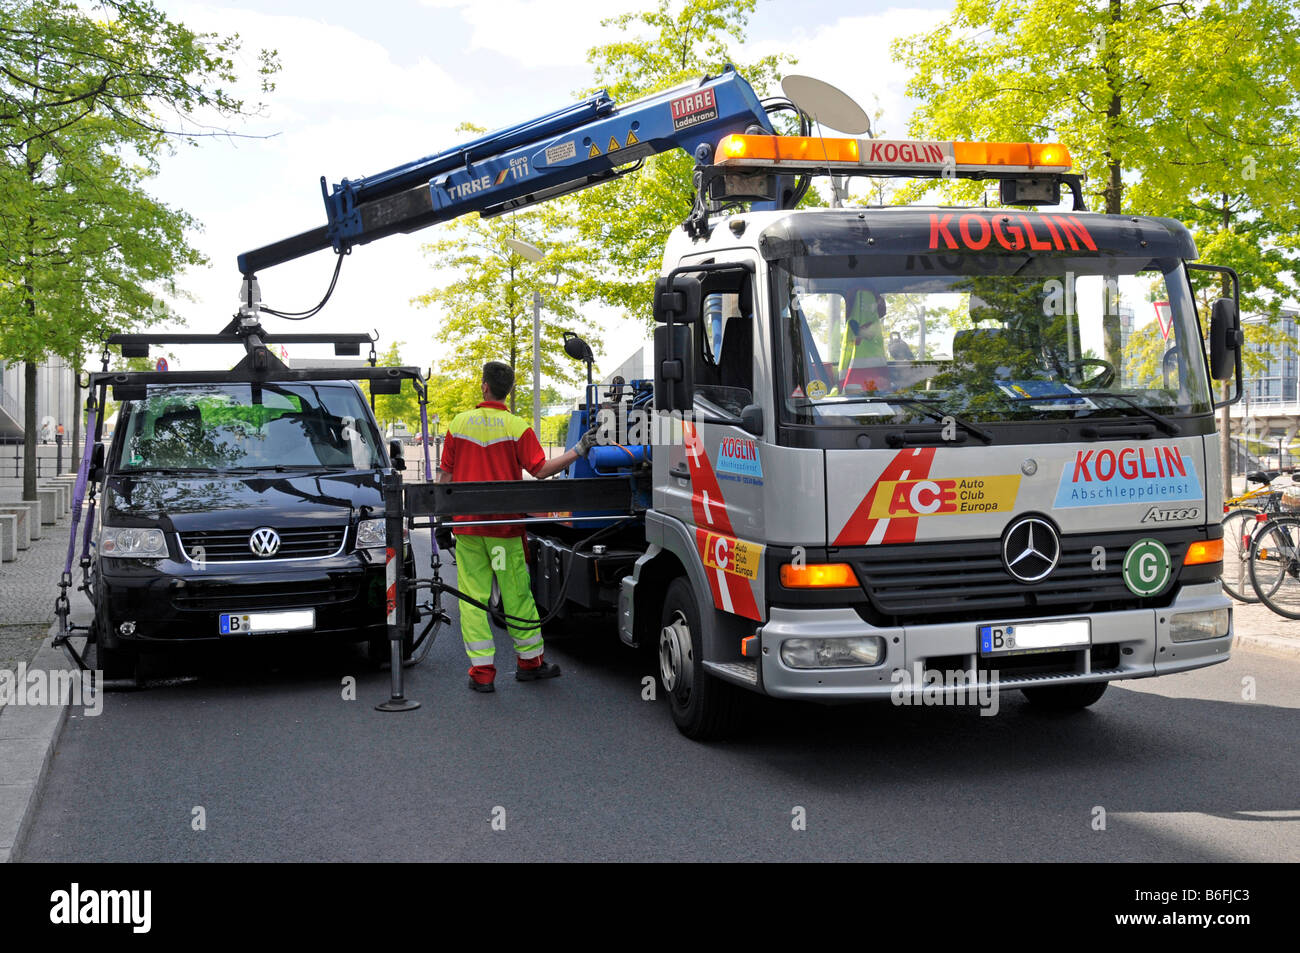 Ein falsch geparktes Auto wird abgeschleppt, Berlin, Deutschland, Europa  Stockfotografie - Alamy